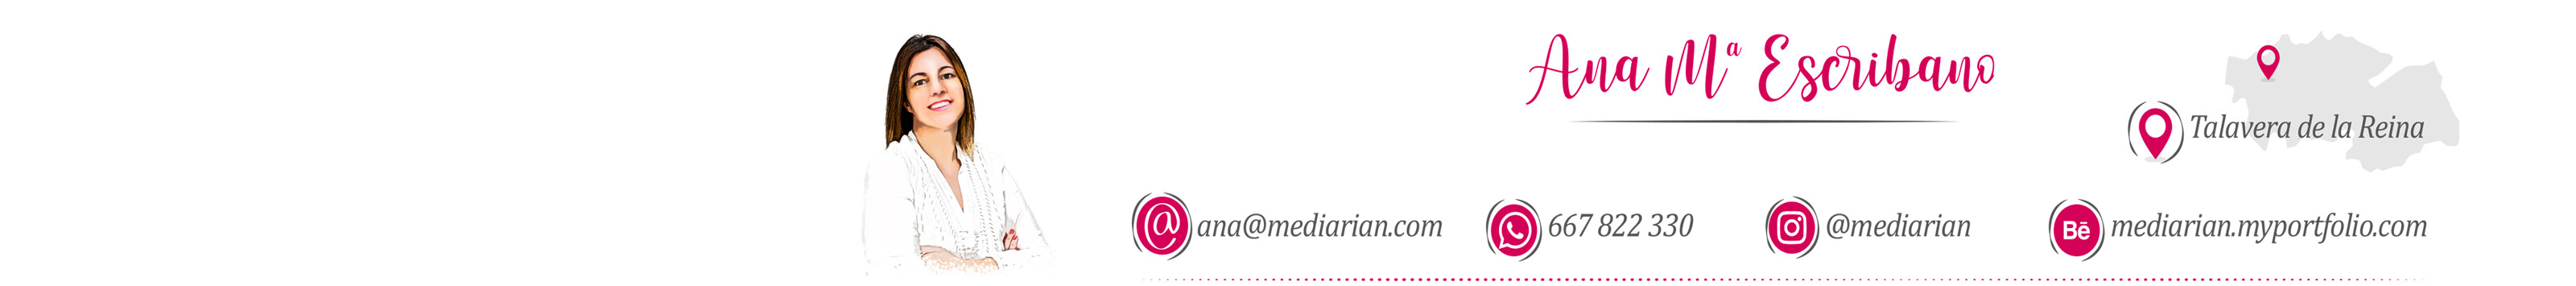 Ana Escribano's profile banner